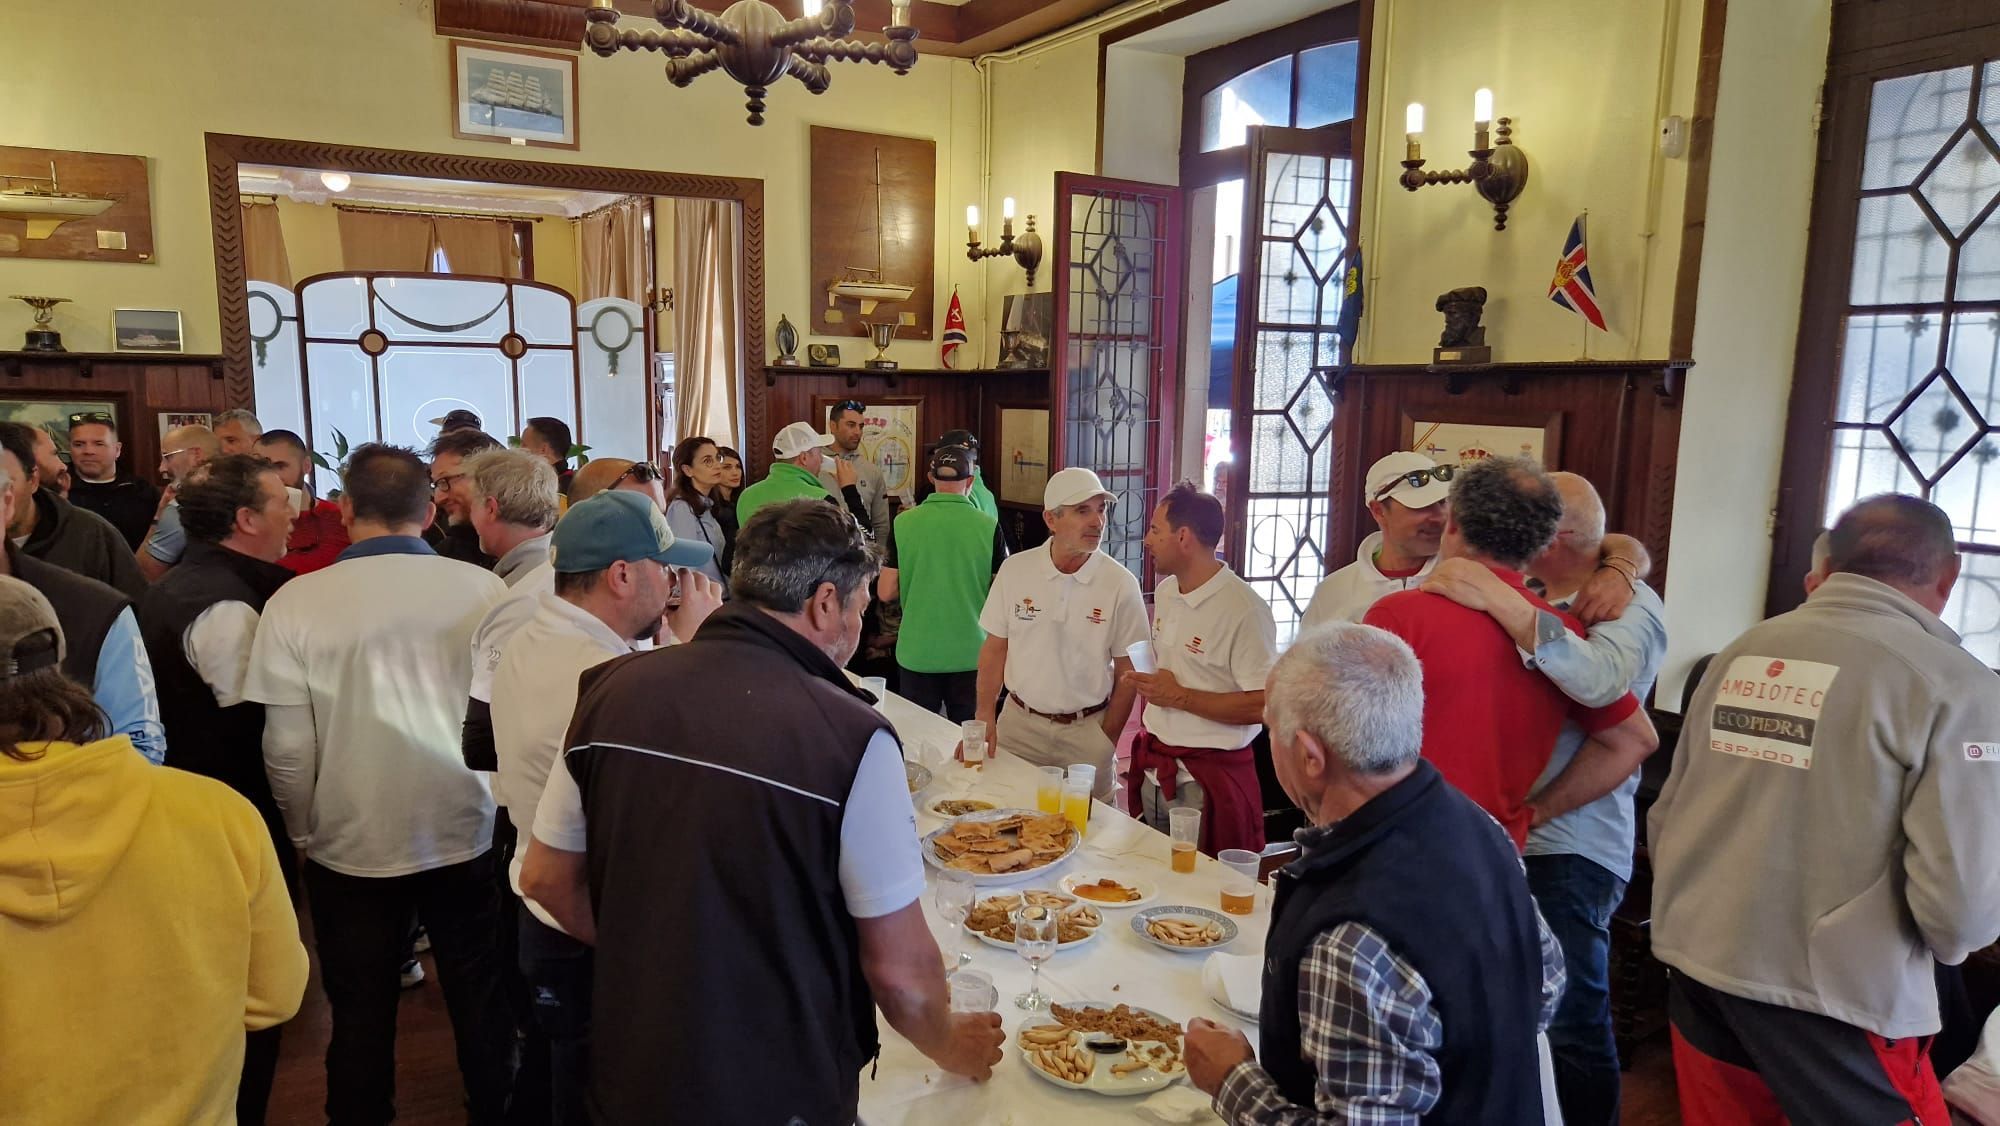 El Real Club de Regatas de Galicia, en Vilagarcía, celebró por todo lo alto la jornada definitiva de la Liga de Cruceros Ría de Arousa.